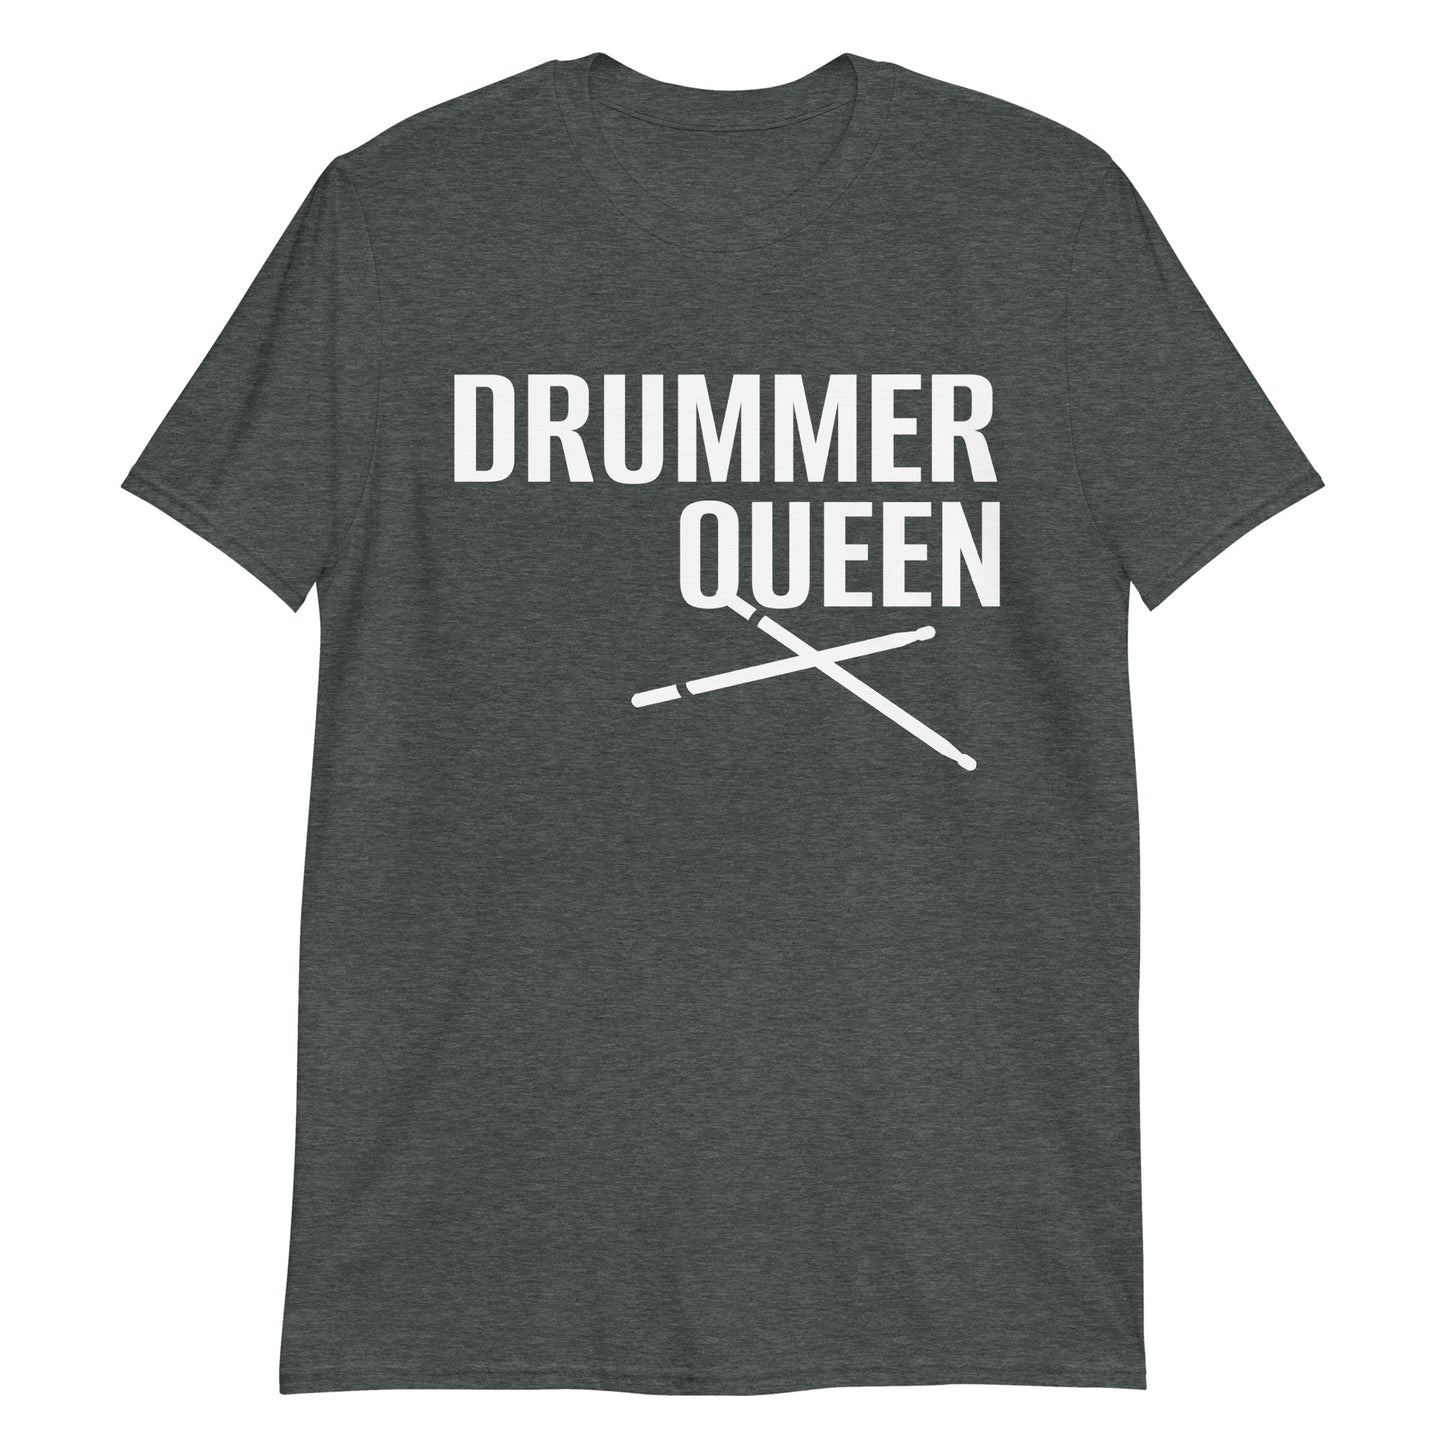 Drummer Queen. Funny Unisex T-Shirt